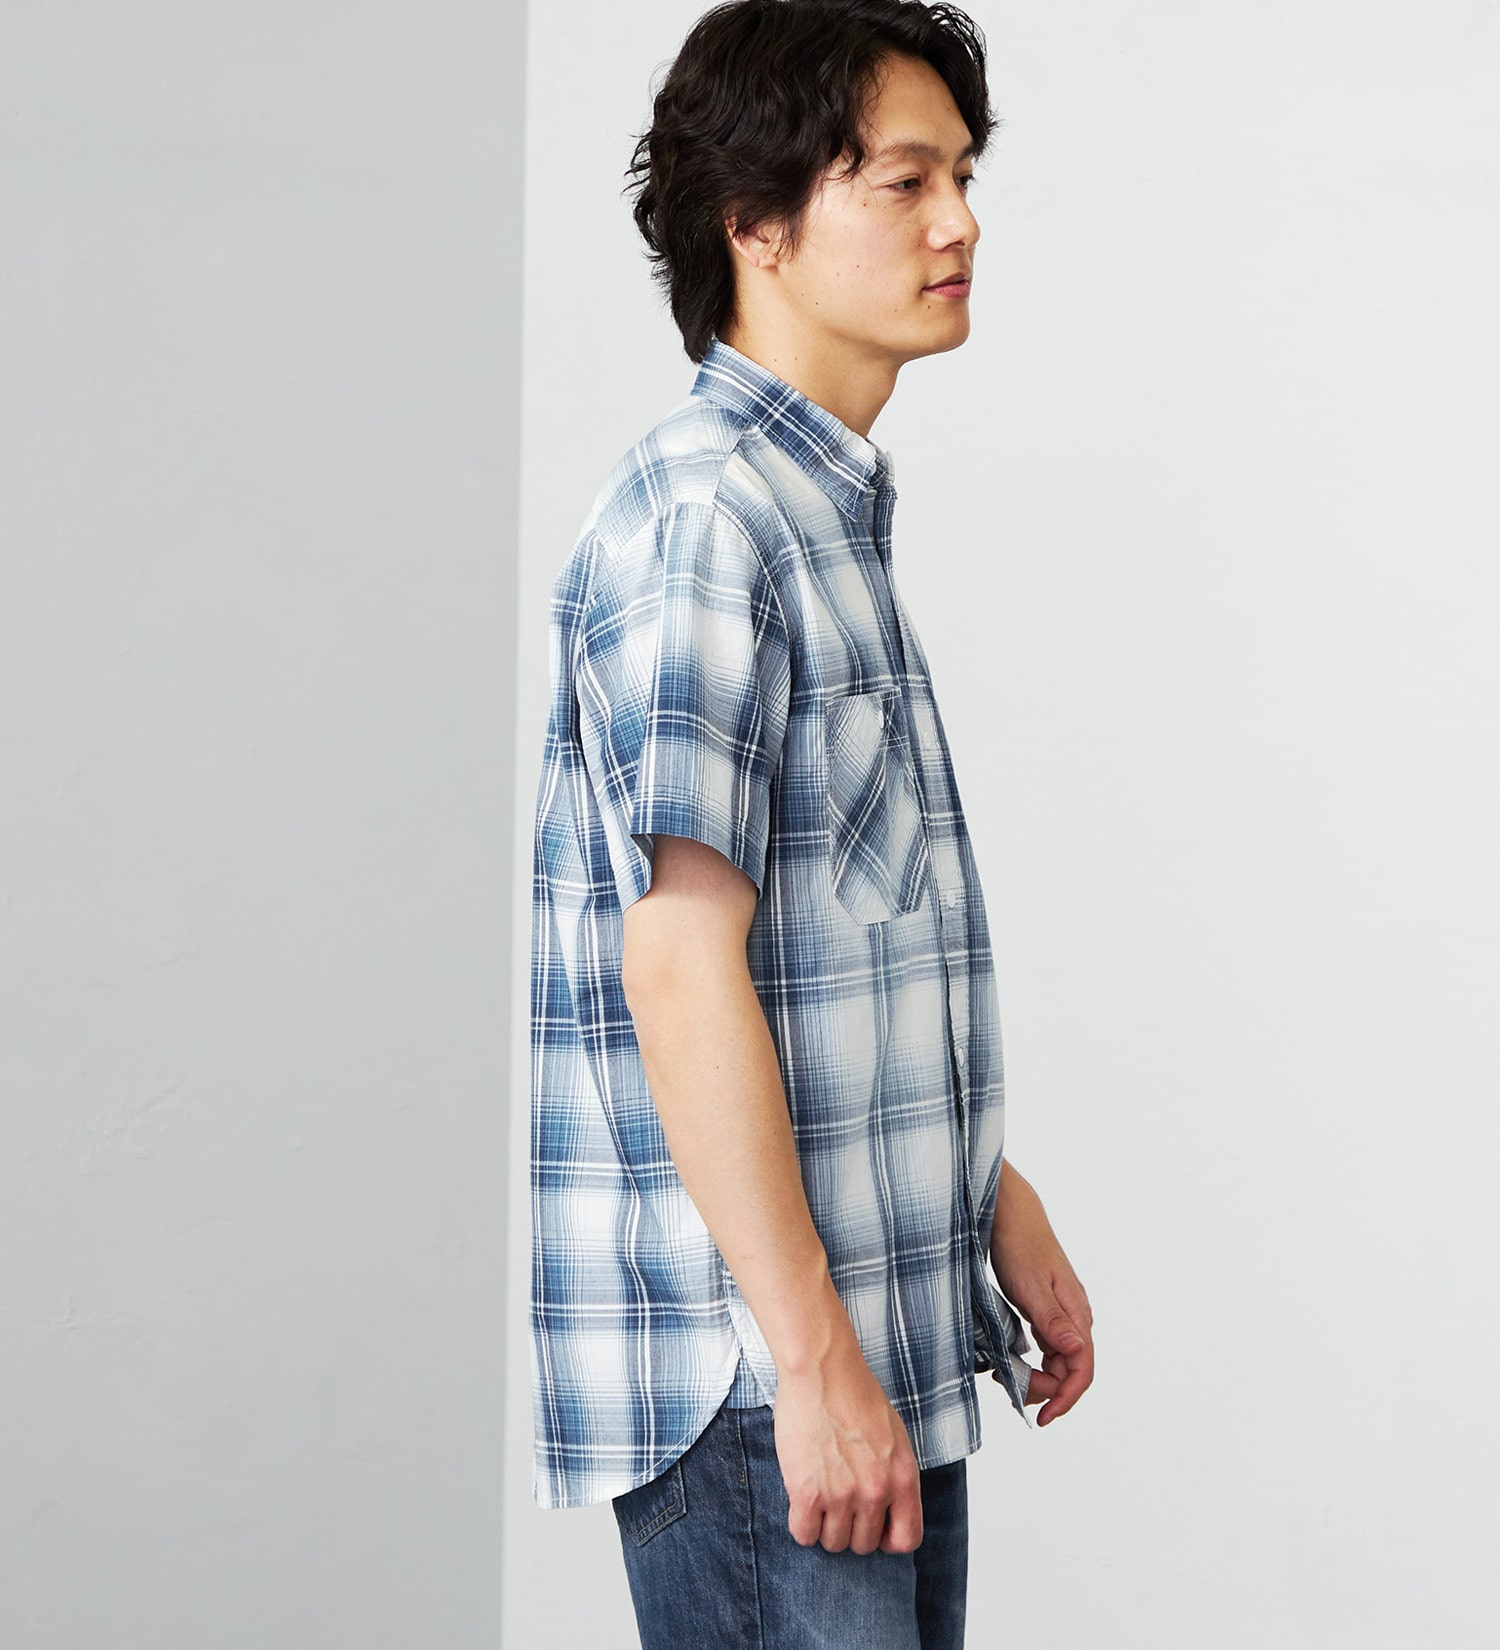 EDWIN(エドウイン)のワークシャツ 半袖|トップス/シャツ/ブラウス/メンズ|ホワイト×ブルー